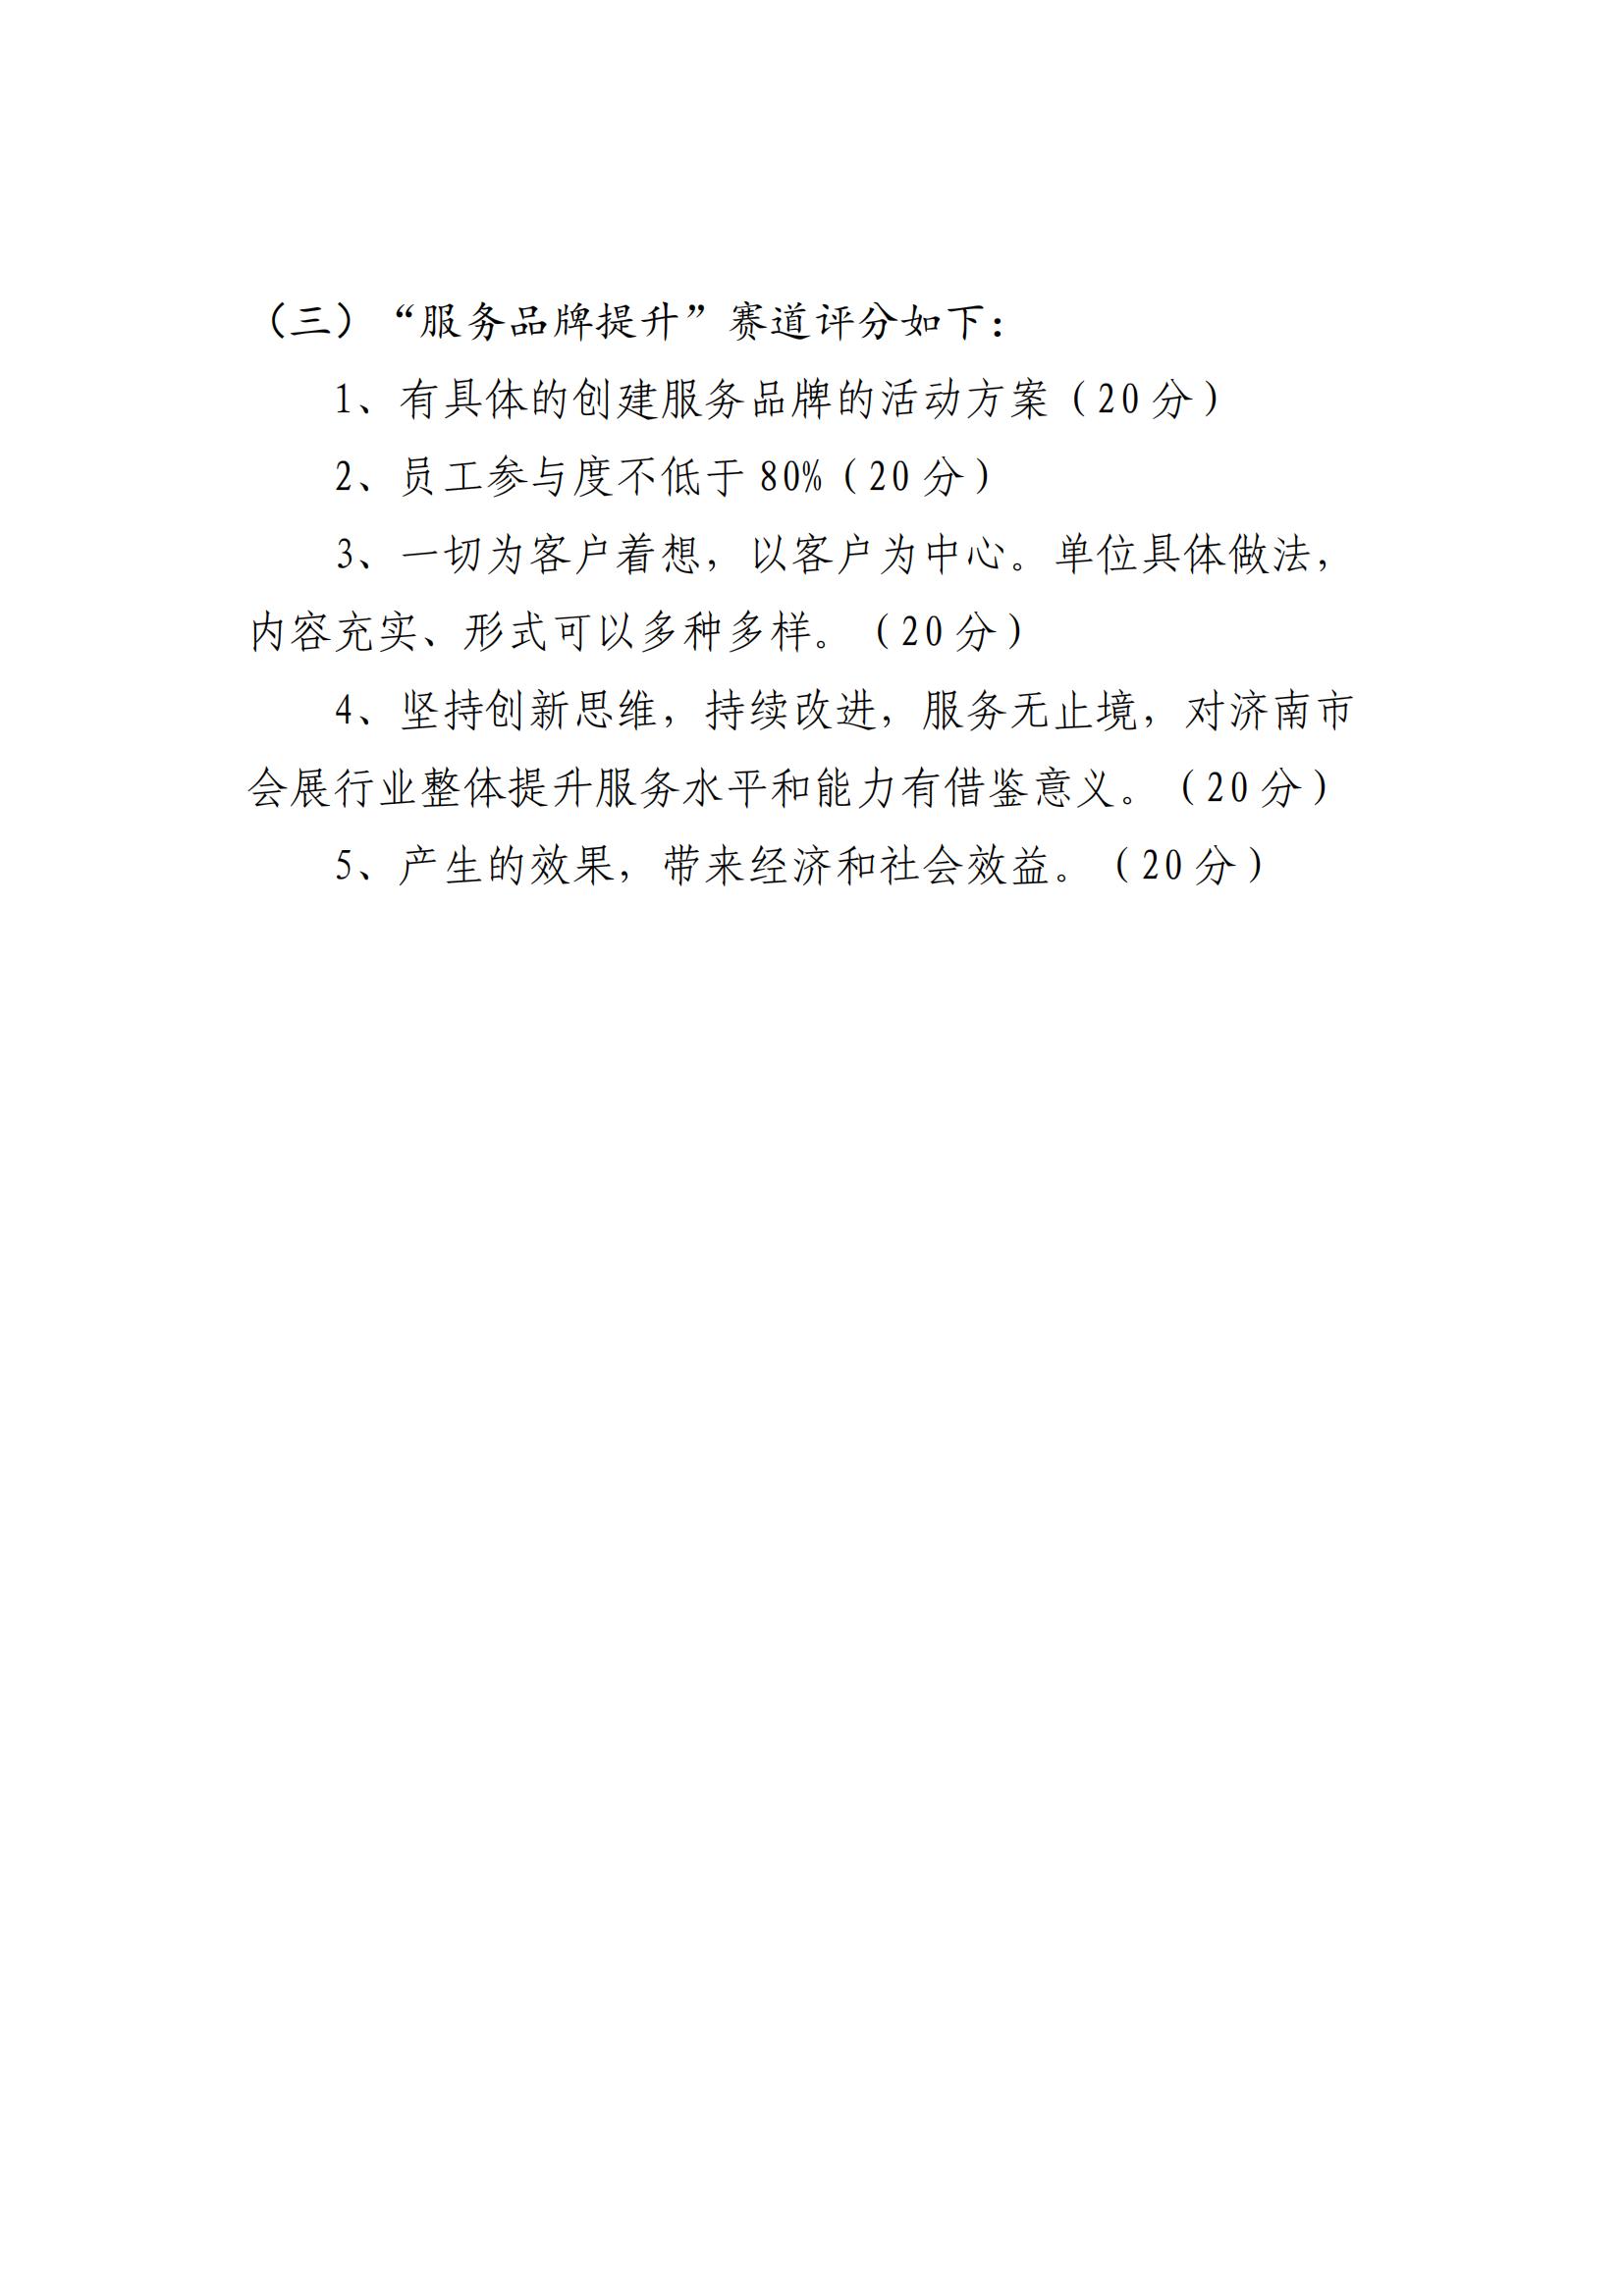 济南市会展业协会关于组织参加竞赛的通知11_01_08